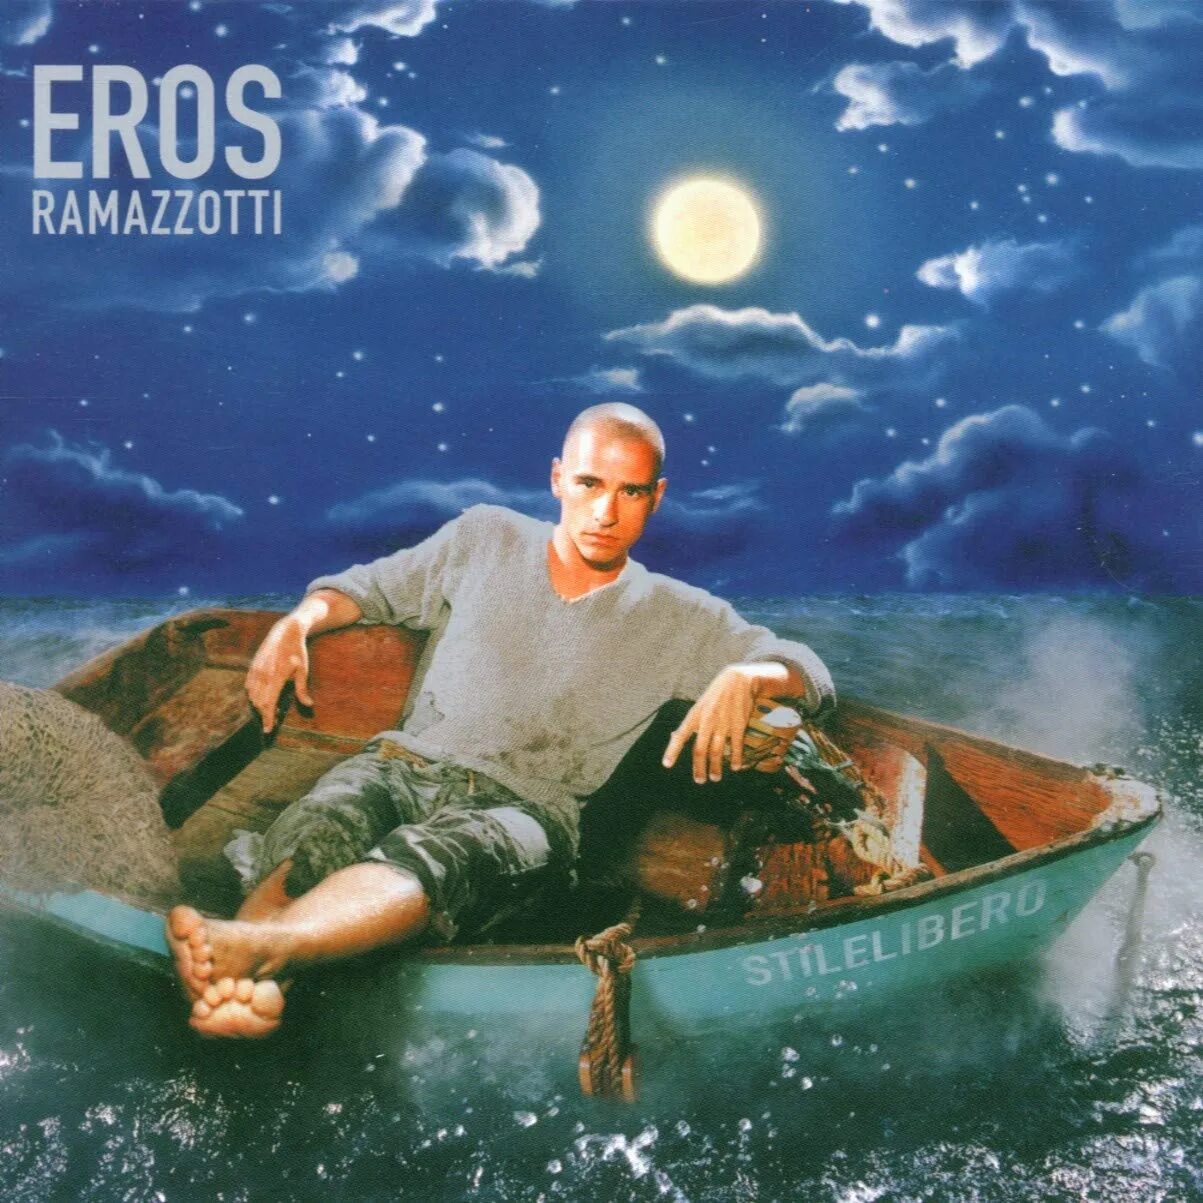 Рамазотти piu che puoi. Eros Ramazzotti - Stilelibero (2000). Eros Ramazzotti Stilelibero. Eros Ramazzotti Stilelibero album. Эрос Рамазотти (Eros Ramazzotti)..